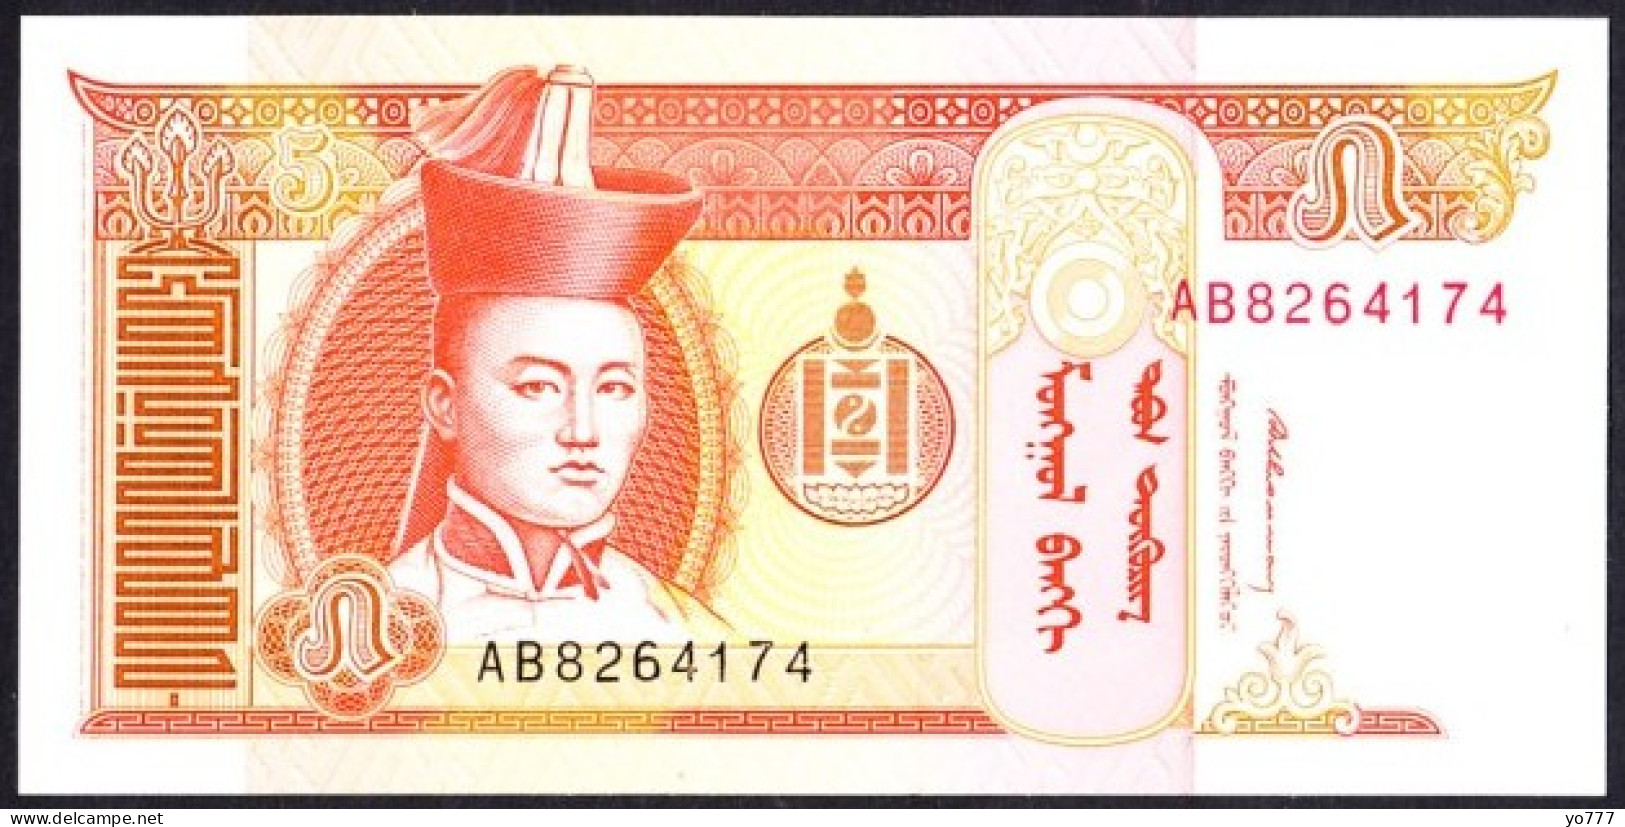 PM MONGOLIA PAPER MONEY UNC - Mongolei